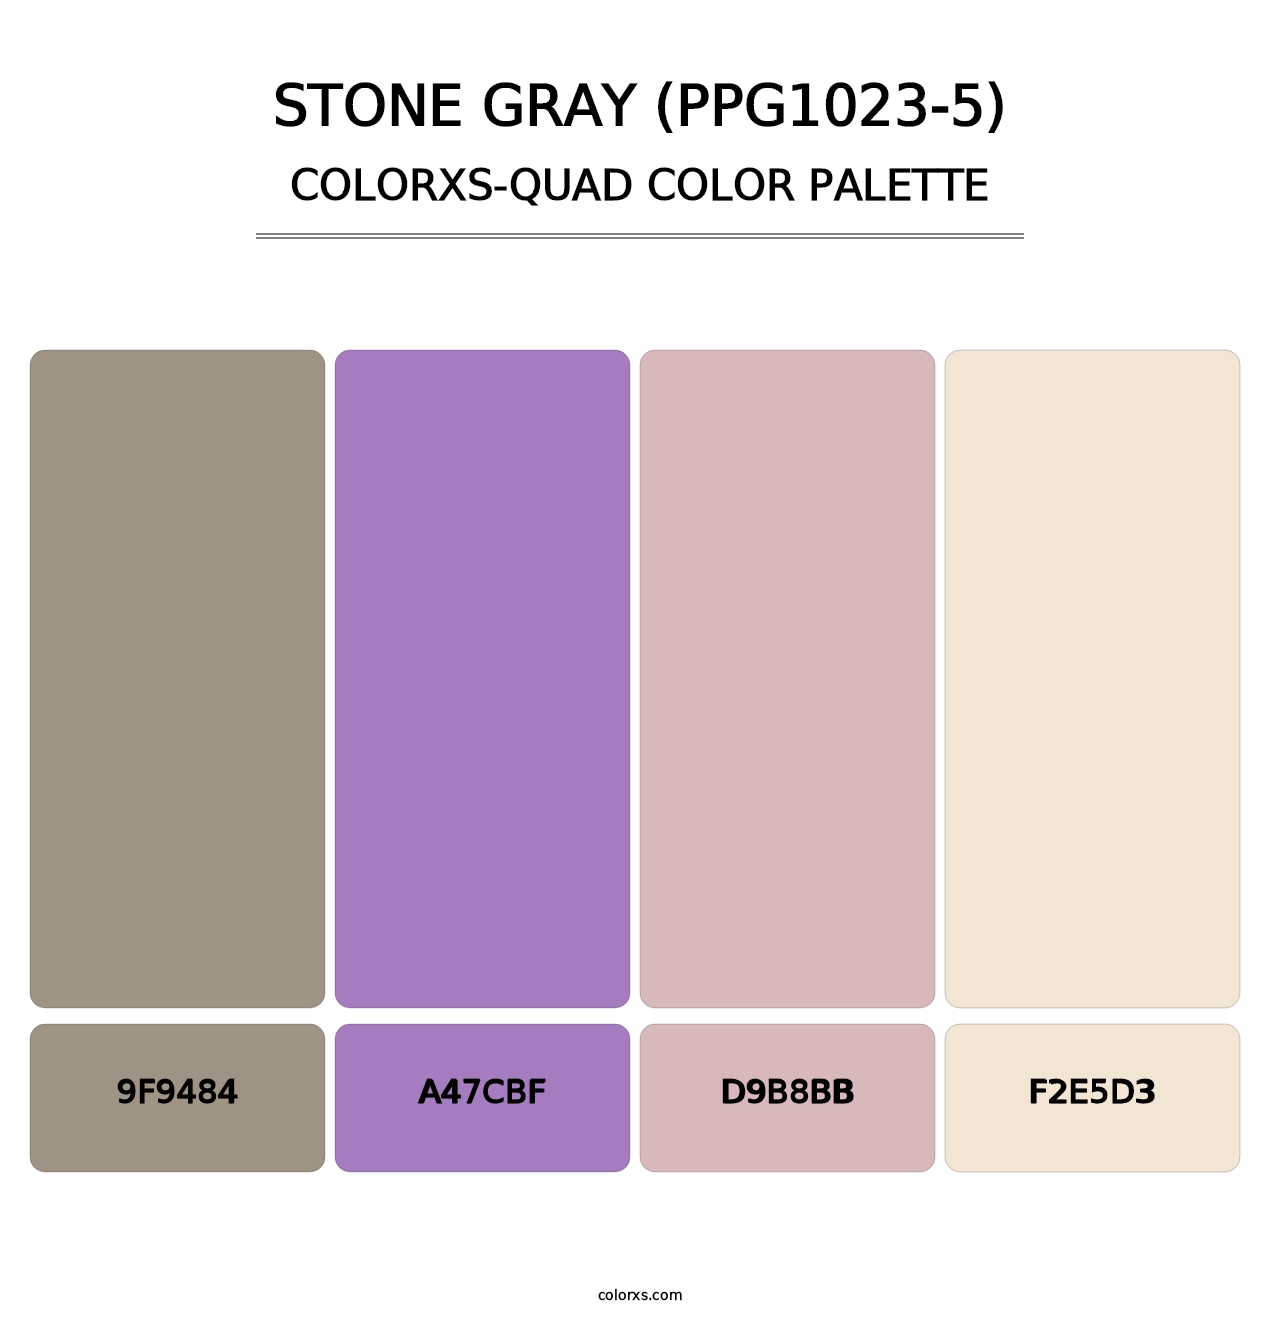 Stone Gray (PPG1023-5) - Colorxs Quad Palette